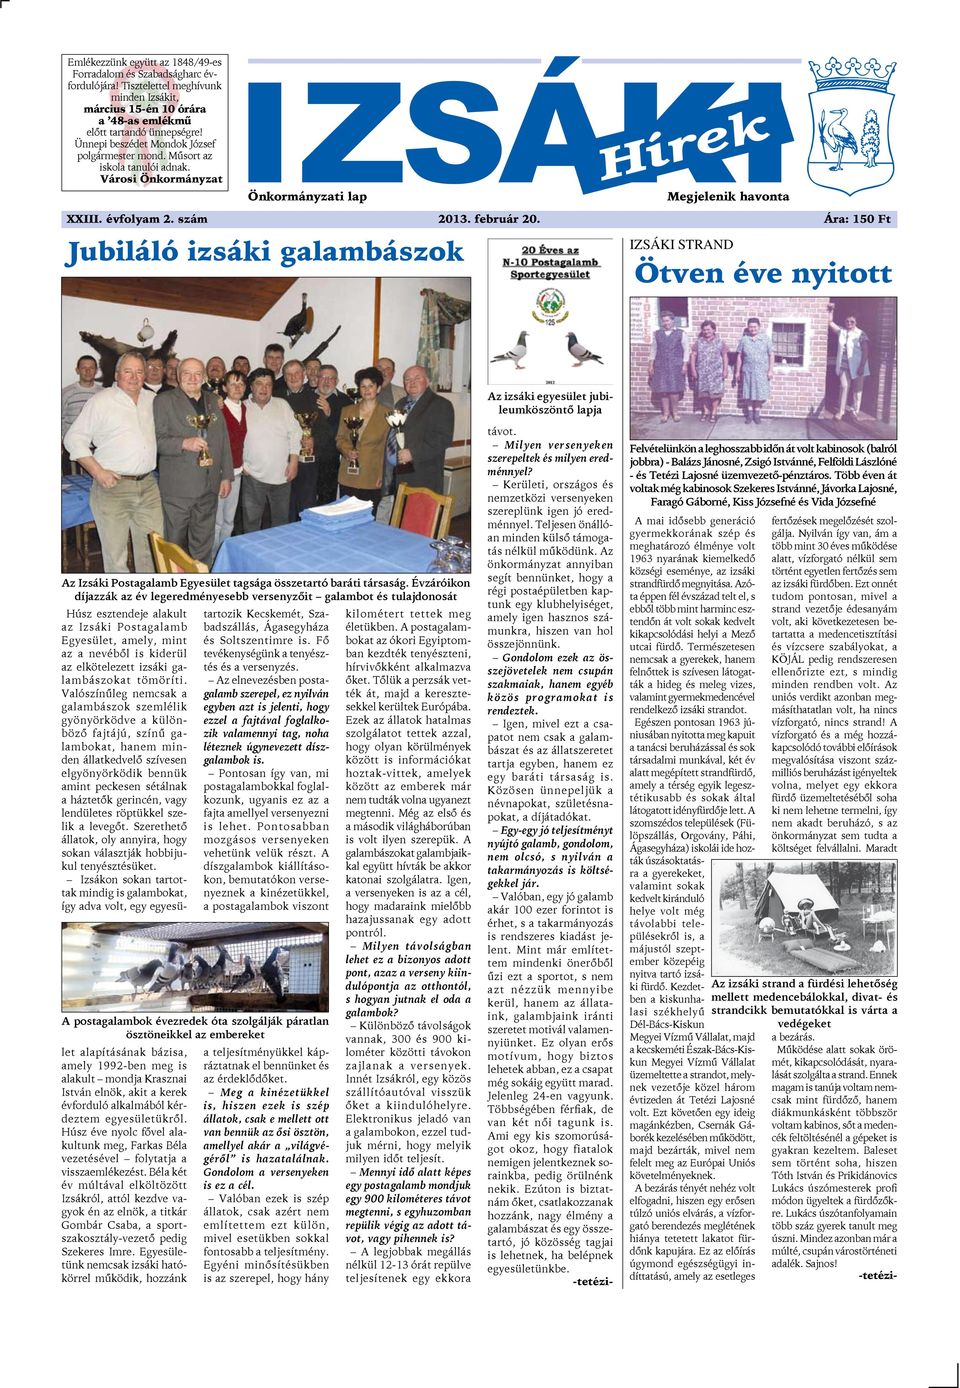 február 20. Ára: 150 Ft IZSÁKI STRAND Ötven éve nyitott Az izsáki egyesület jubileumköszöntő lapja Az Izsáki Postagalamb Egyesület tagsága összetartó baráti társaság.